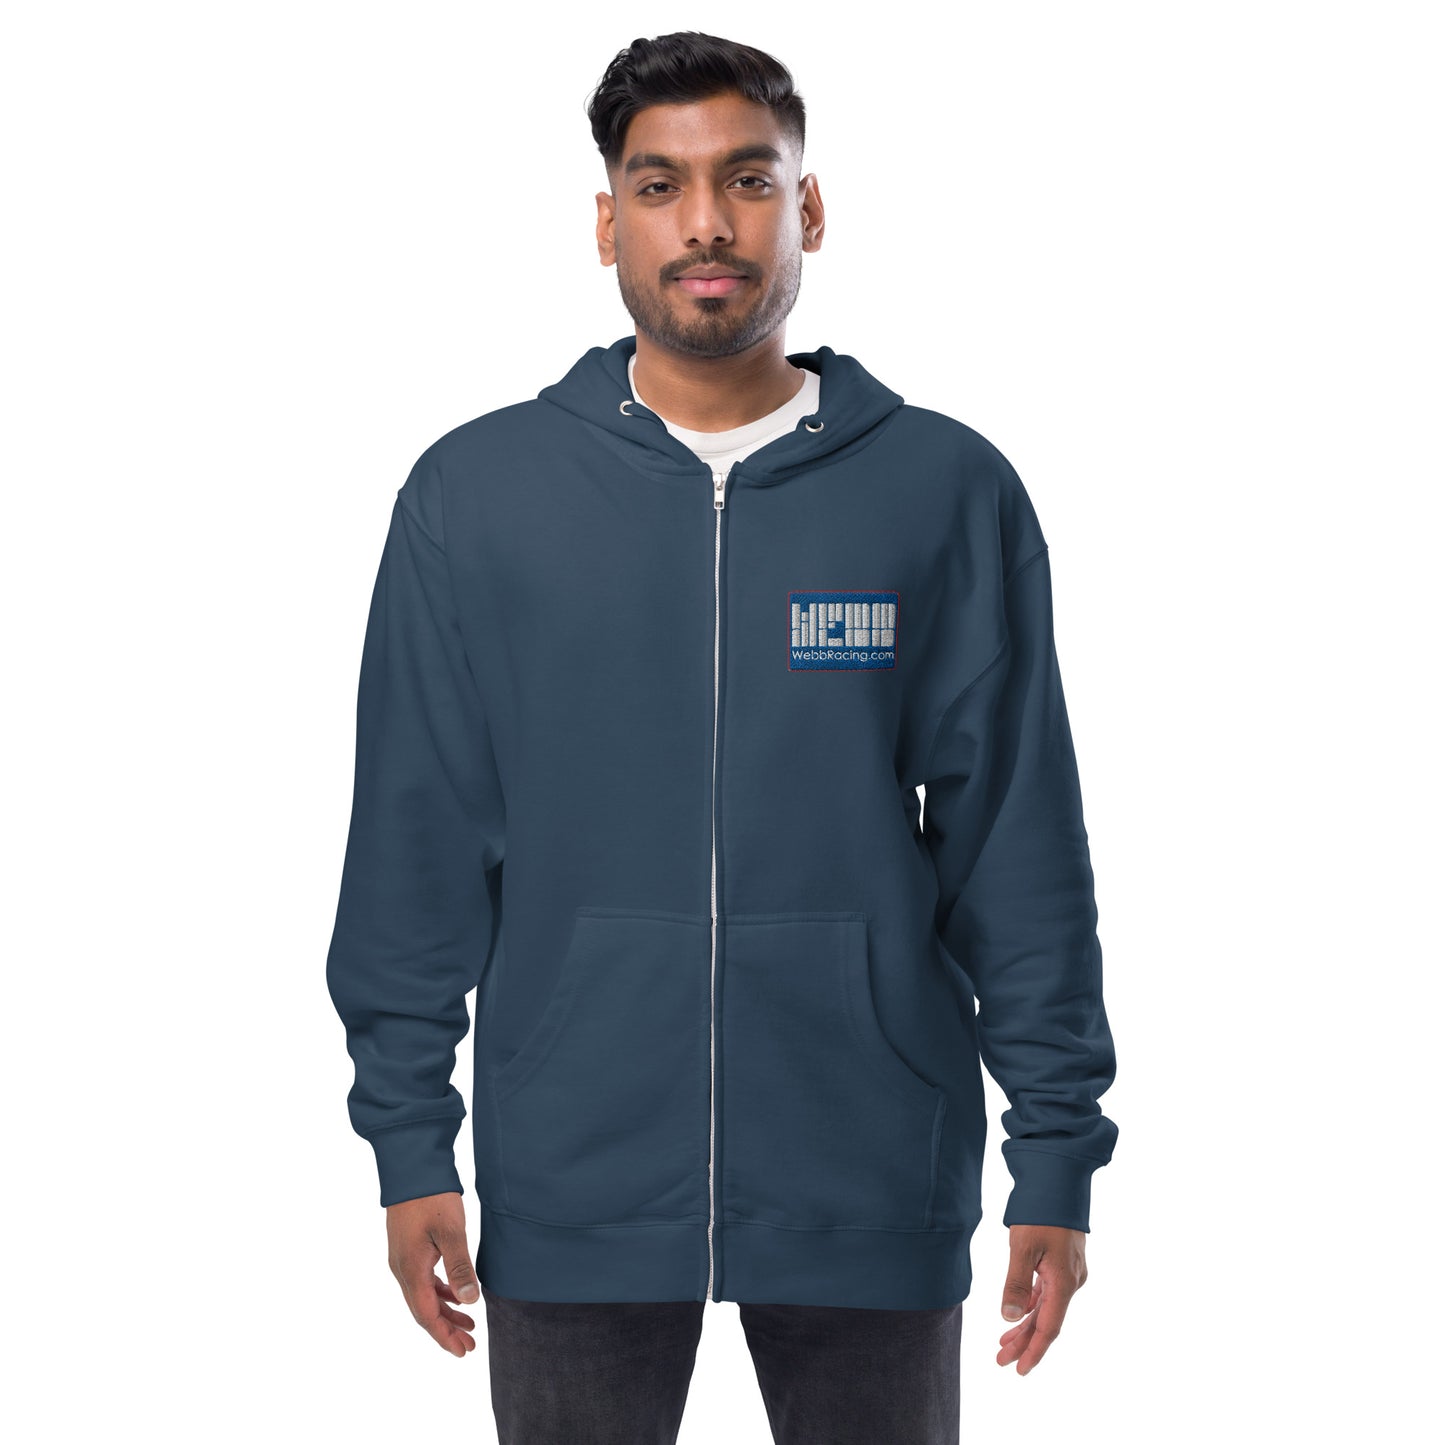 Webb Racing Unisex fleece zip up hoodie